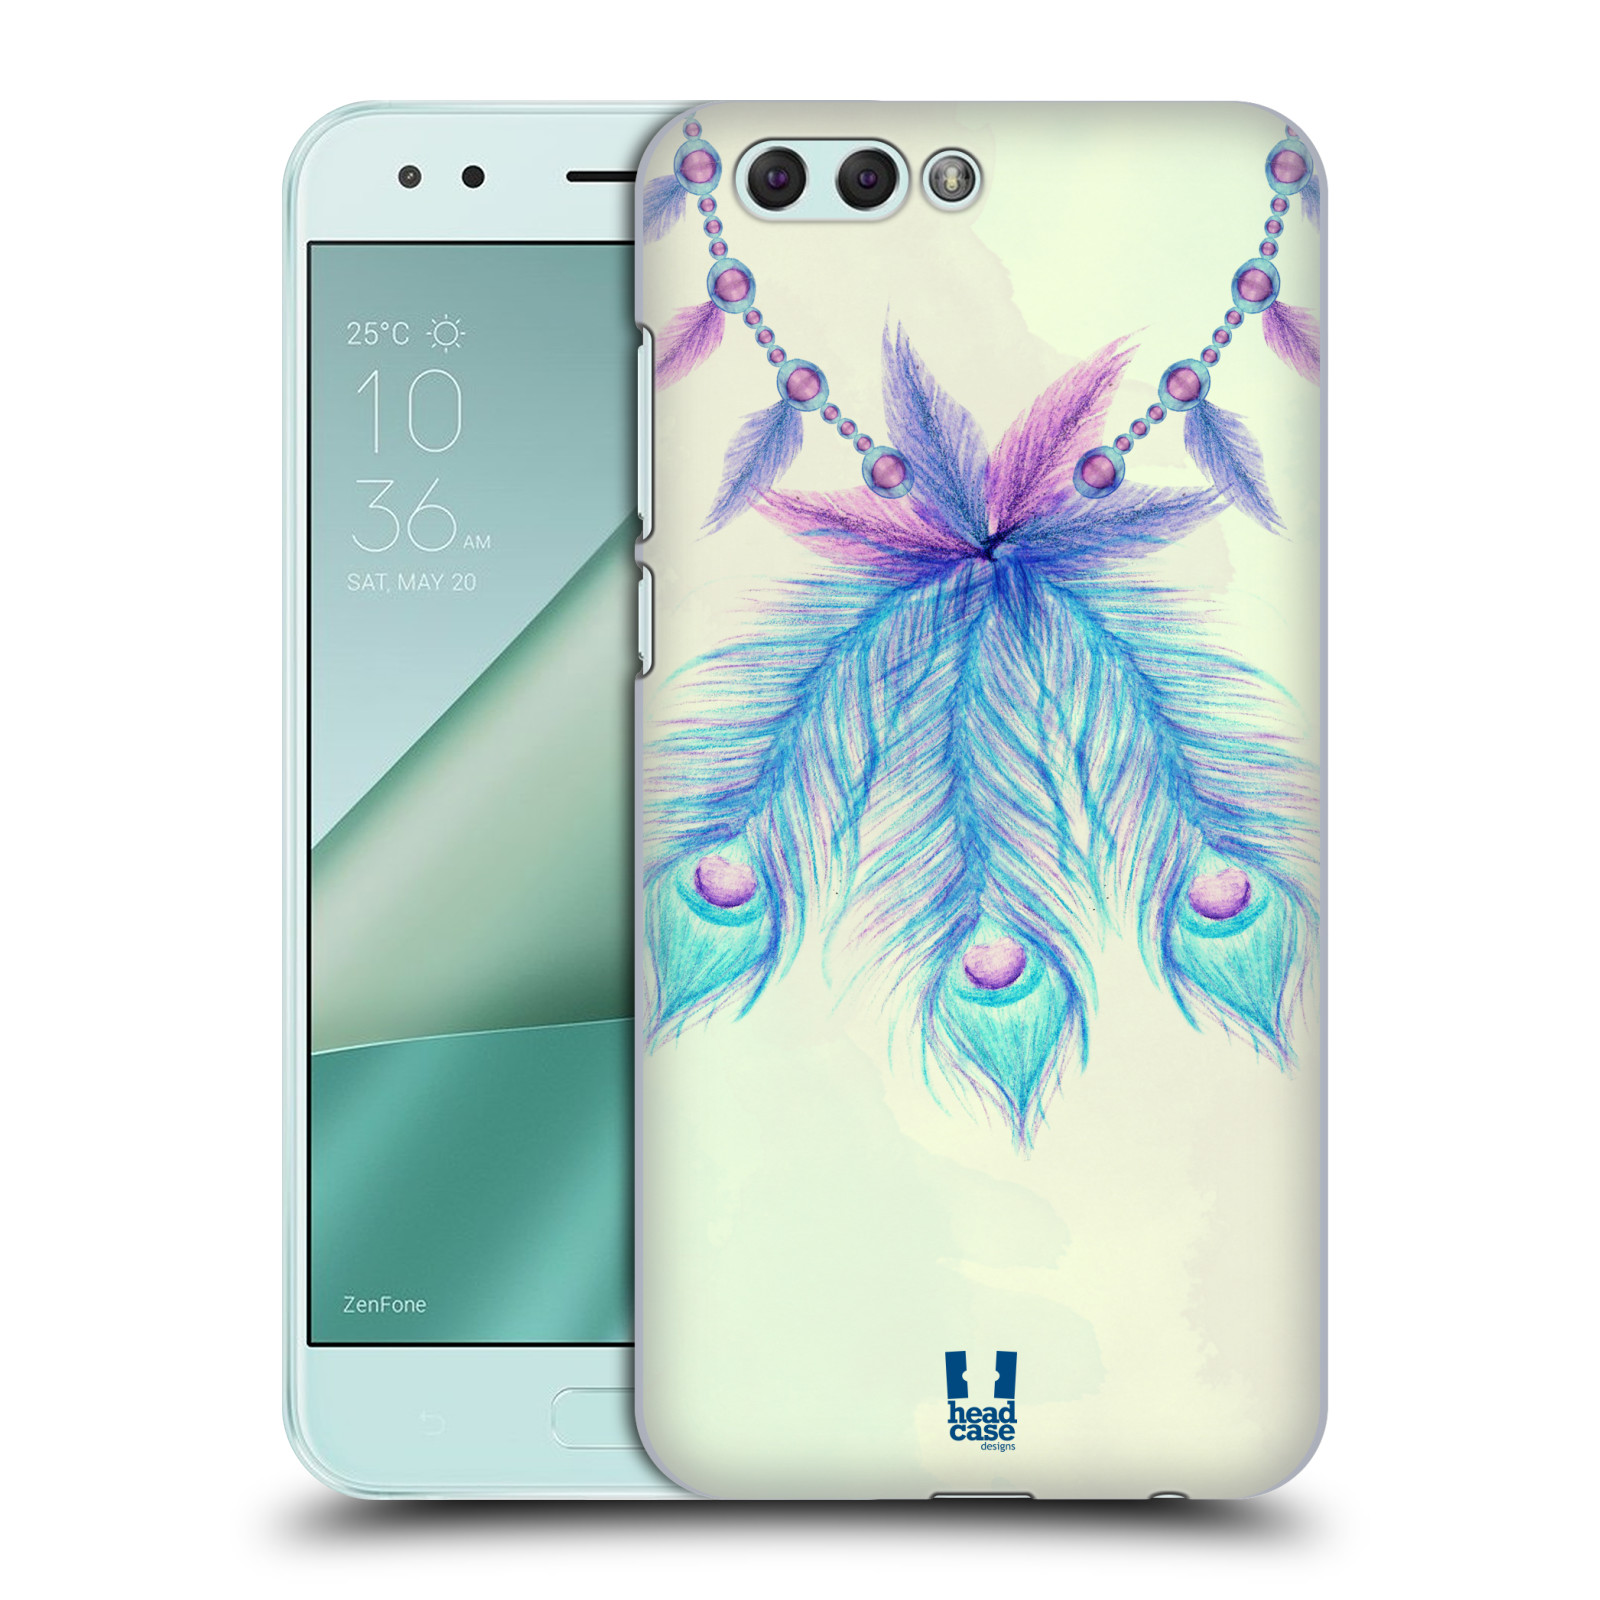 HEAD CASE plastový obal na mobil Asus Zenfone 4 ZE554KL vzor Paví pírka barevná MODRÁ ŠTĚSTÍ